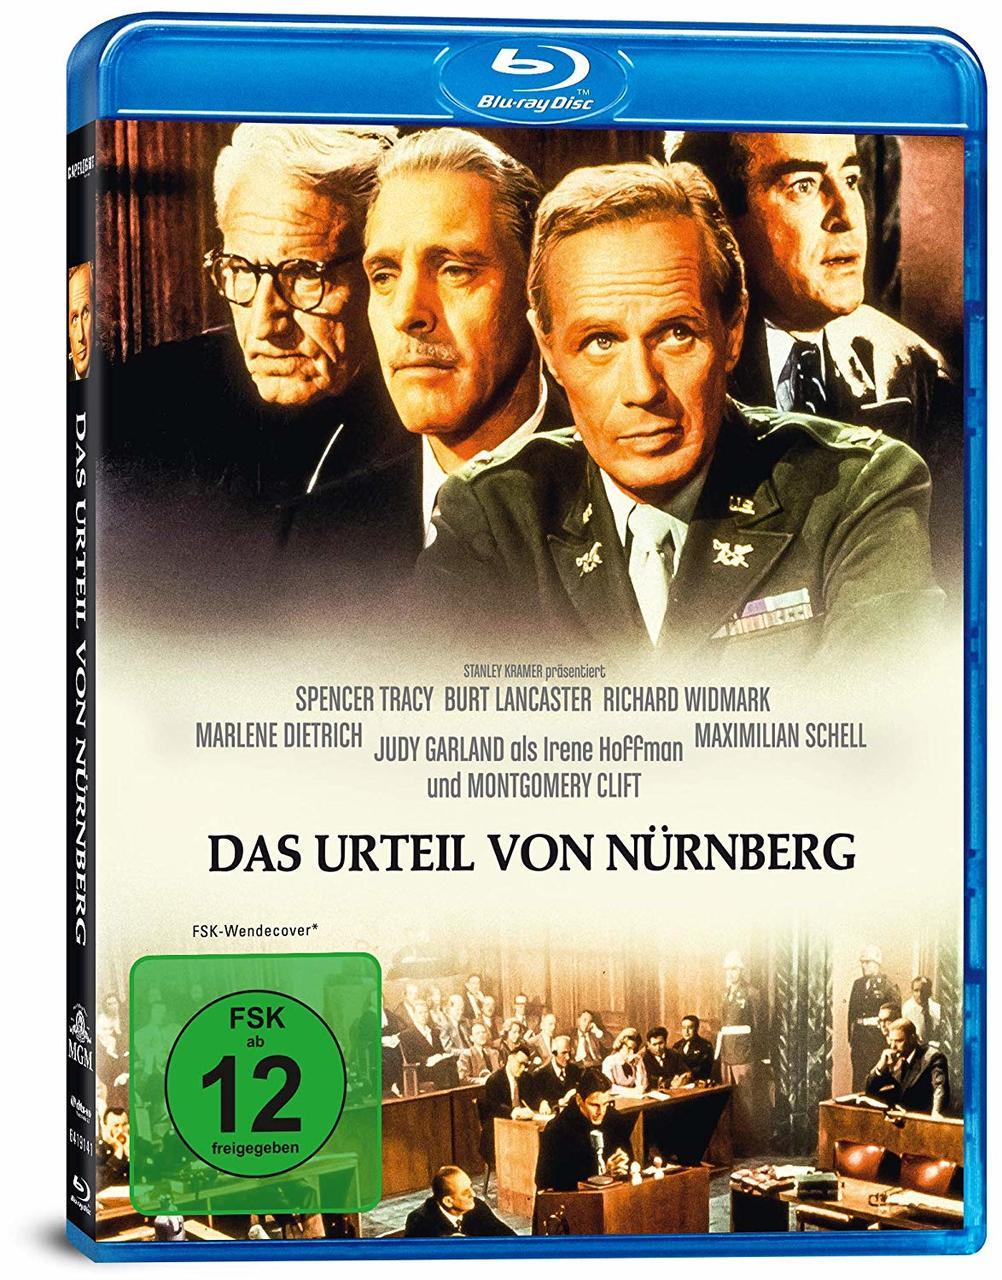 Das Urteil von Blu-ray Nürnberg (Blu-Ray)